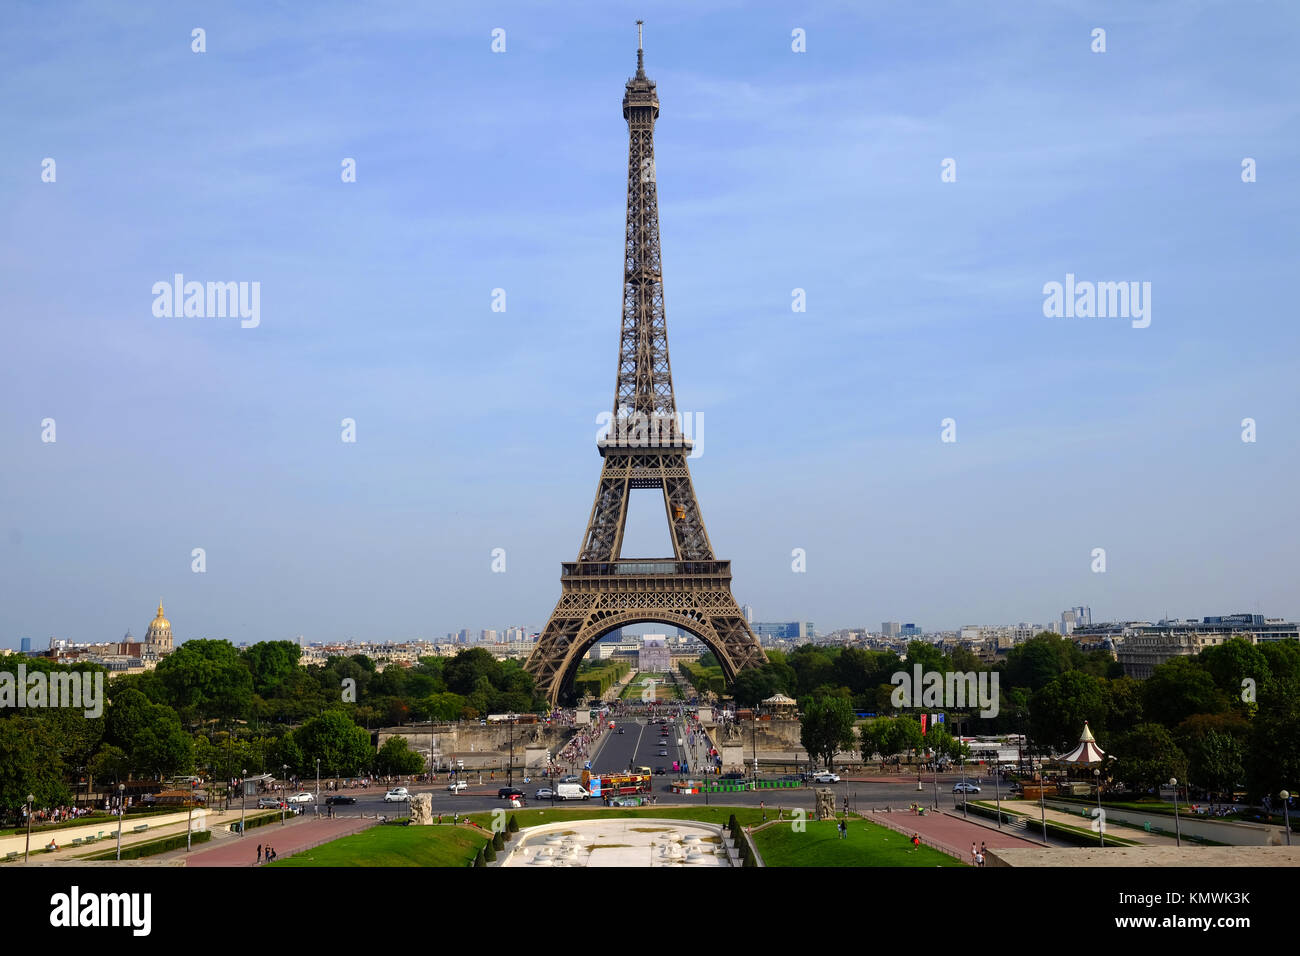 Il simbolo della Francia e di Parigi, la Torre Eiffel in una calda giornata estiva Foto Stock